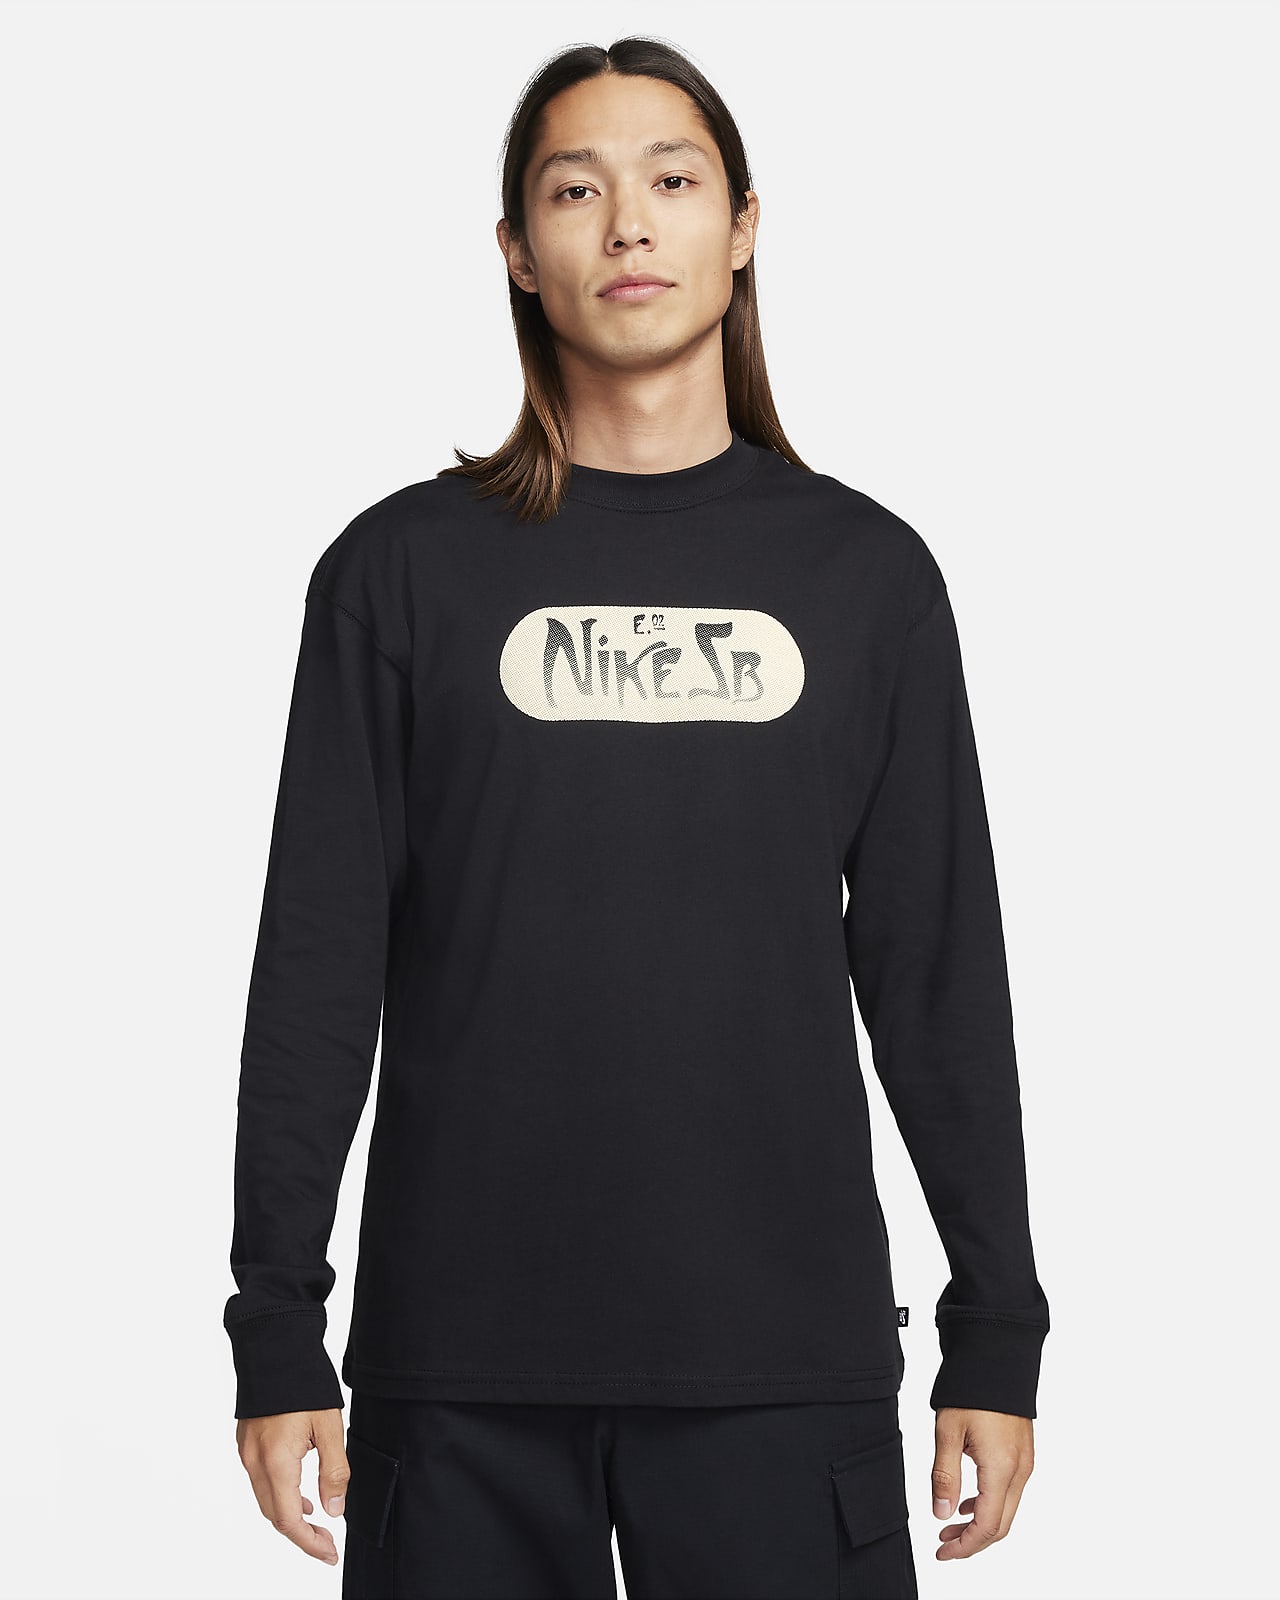 NIKE公式】ナイキ SB ロングスリーブ Max90 スケートボード Tシャツ